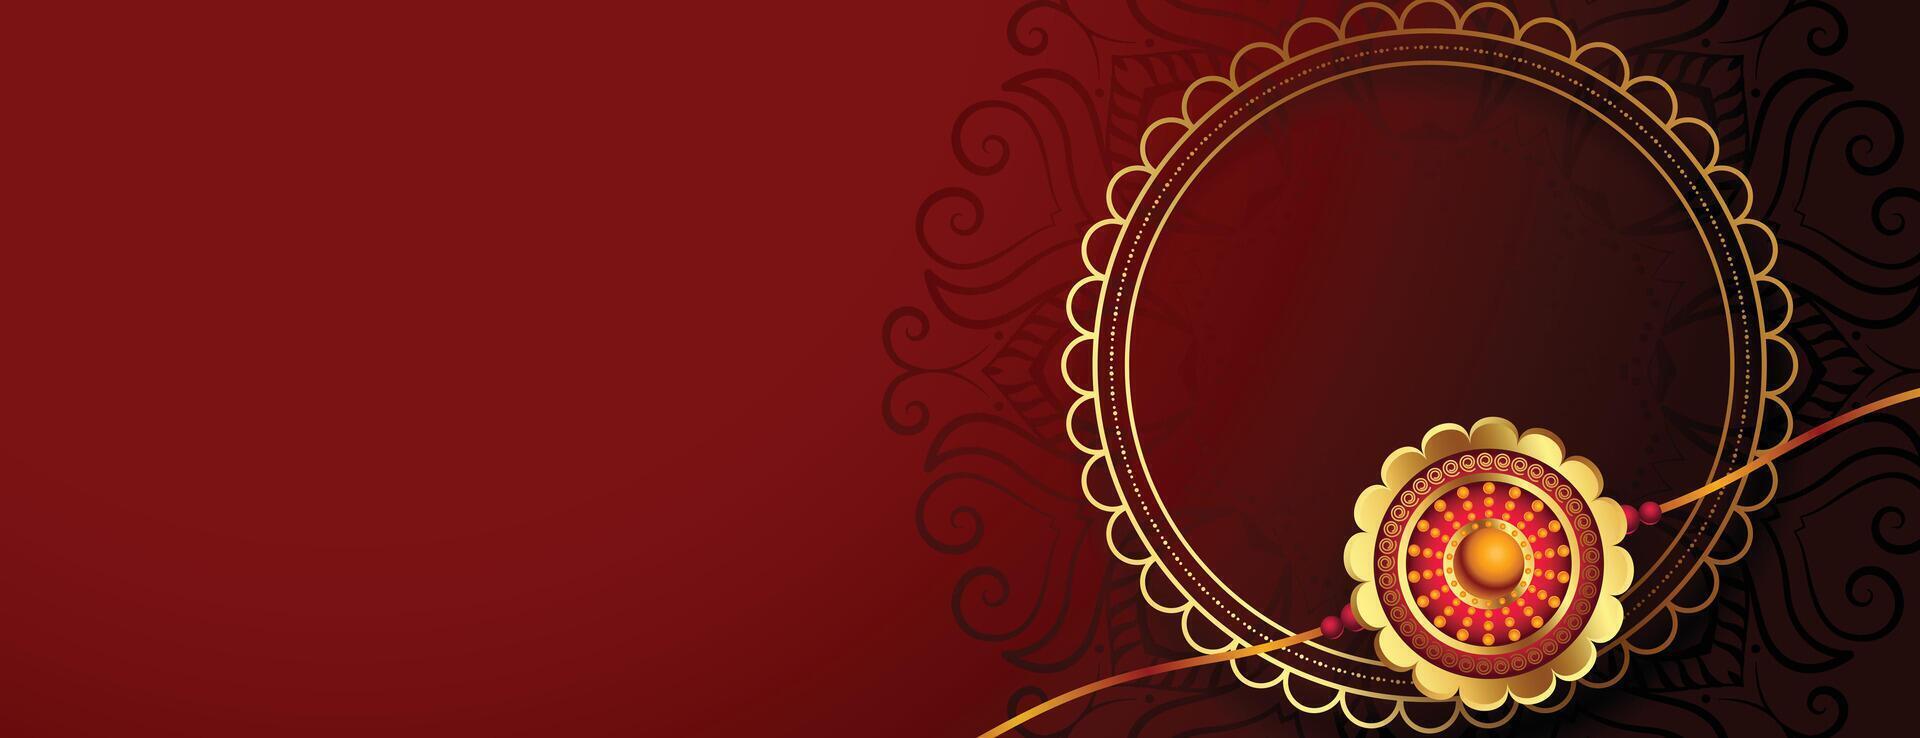 golden rakhi design for raksha bandhan festival vector